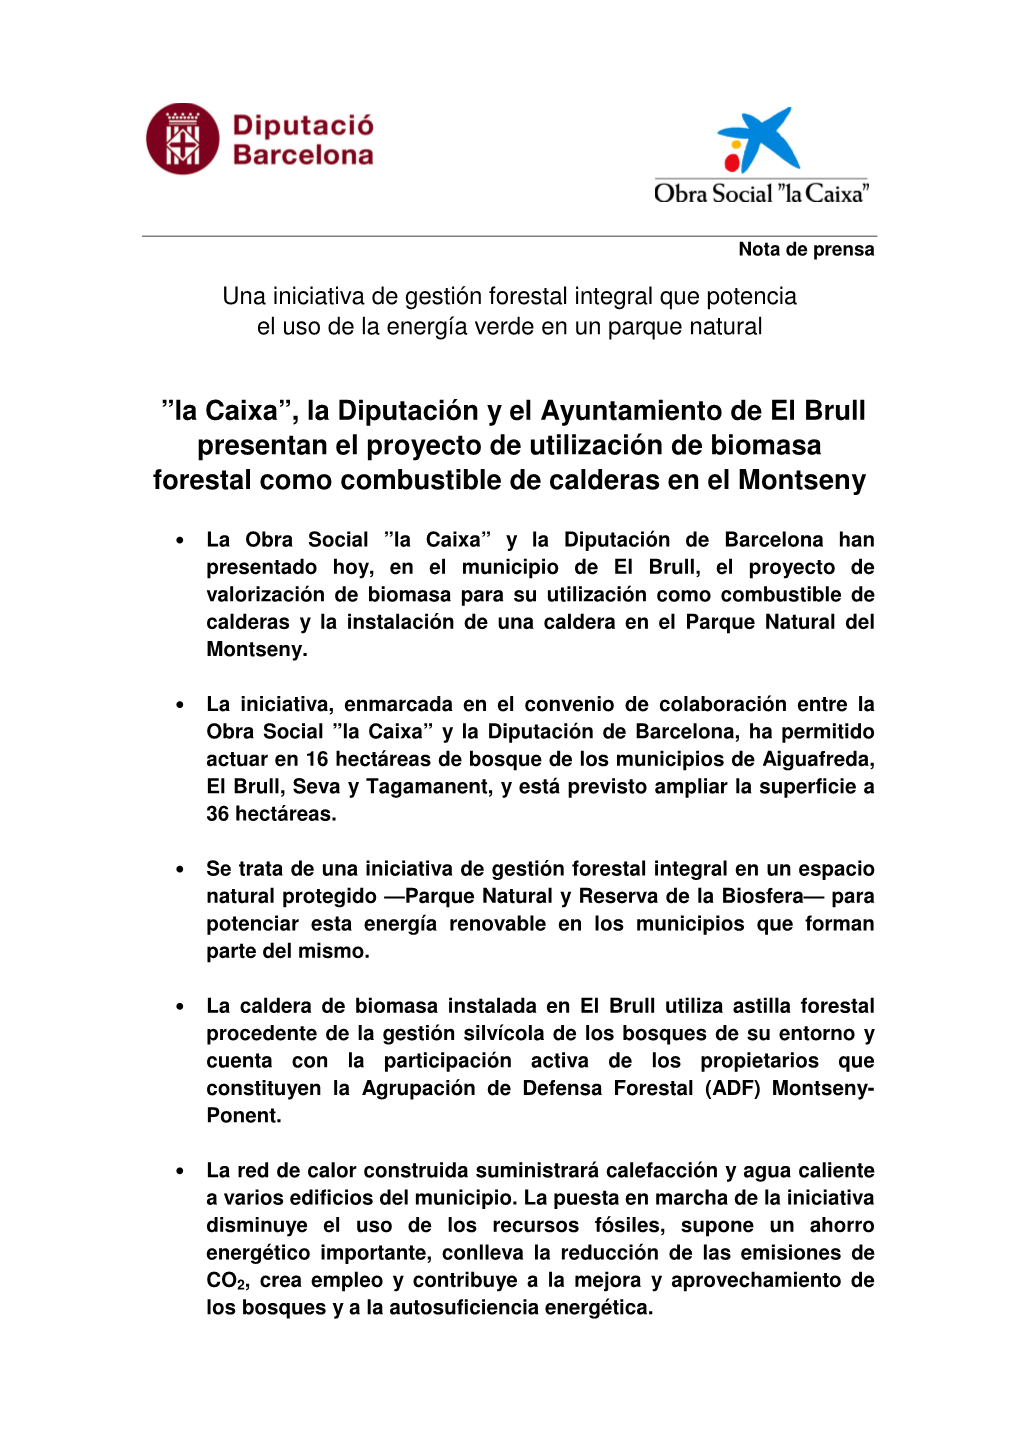 La Diputación Y El Ayuntamiento De El Brull Presentan El Proyecto De Utilización De Biomasa Forestal Como Combustible De Calderas En El Montseny